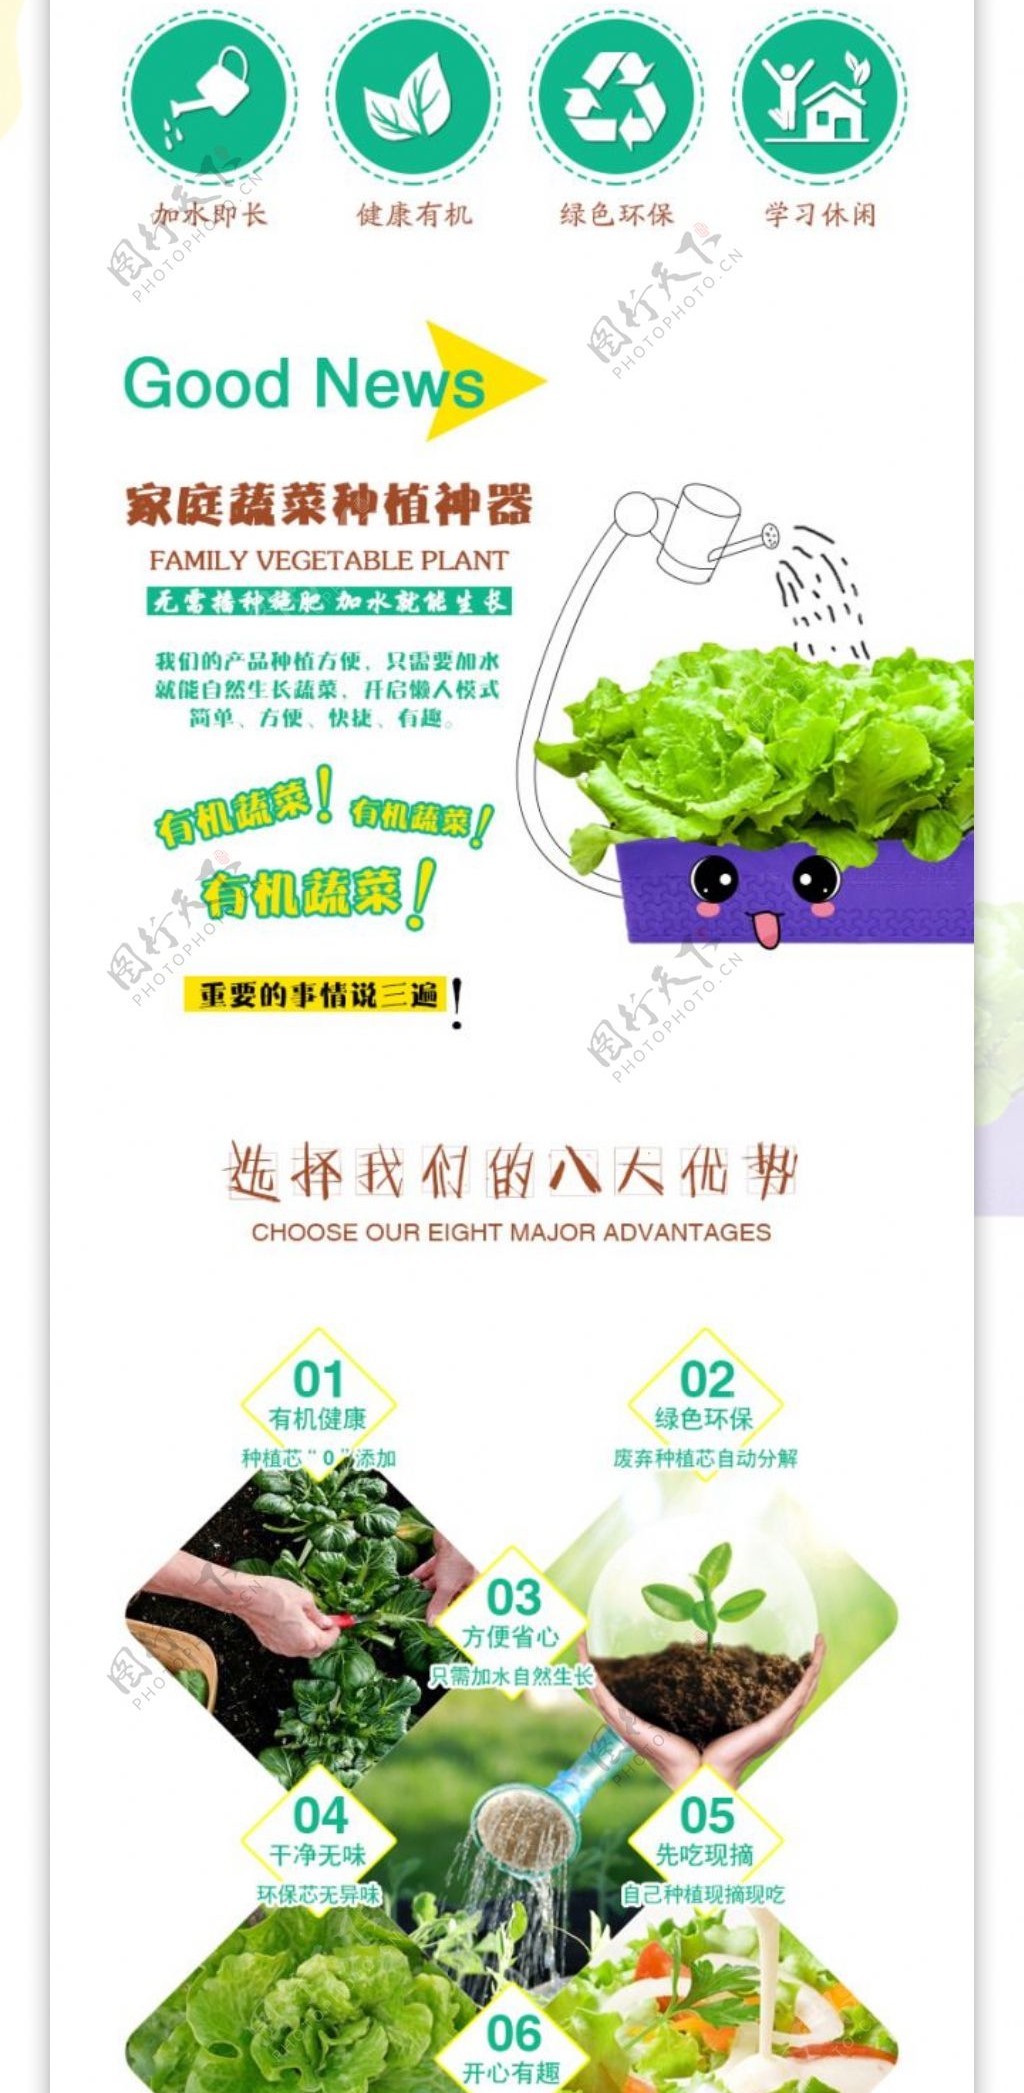 生菜有机蔬菜种植盒产品描述